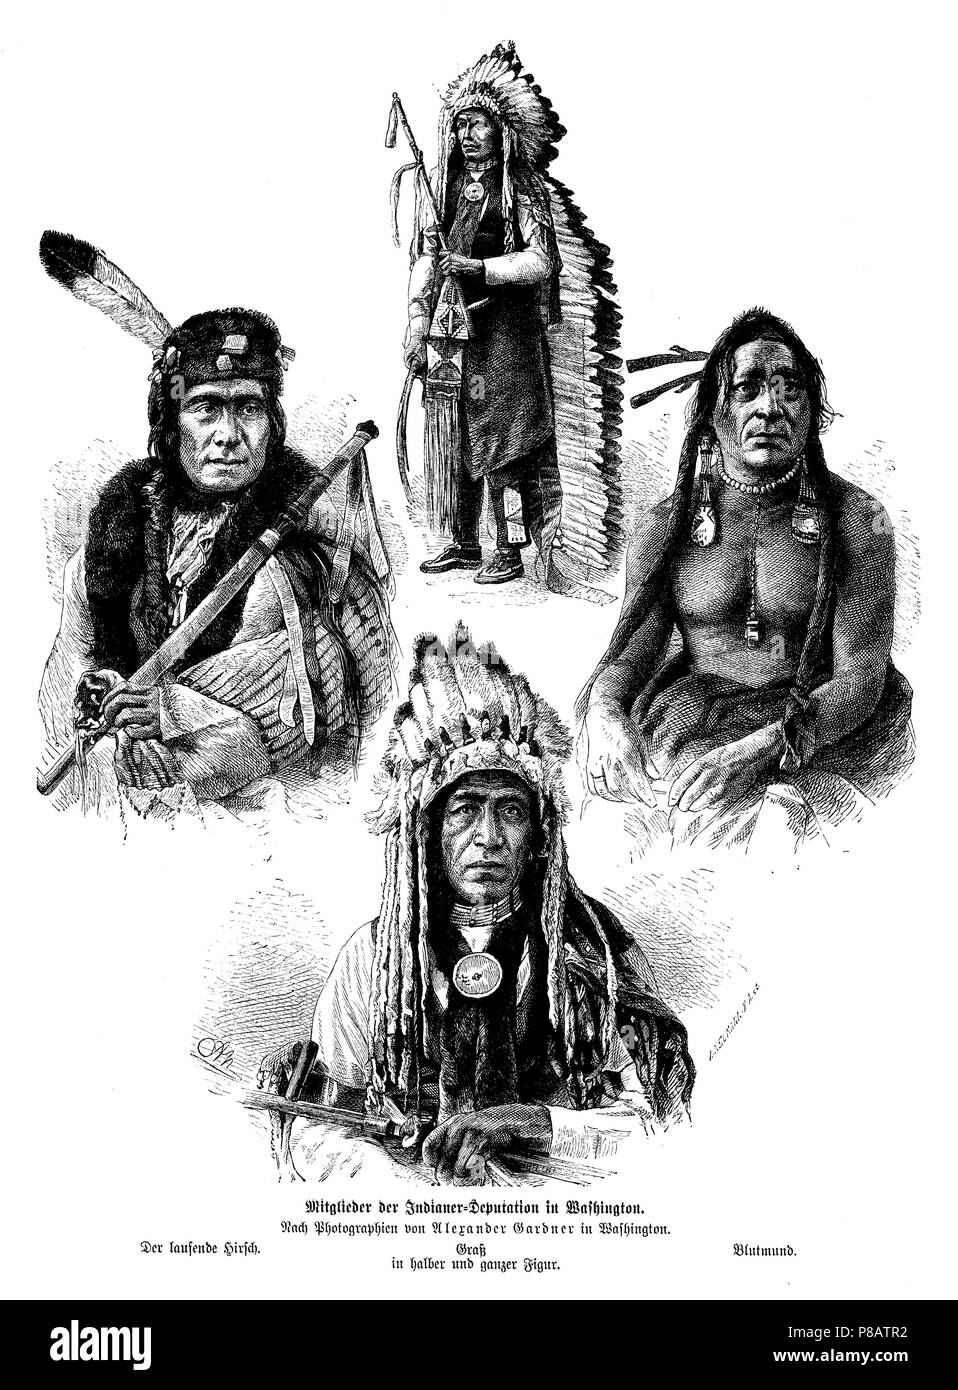 Les membres de la délégation indienne à Washington. L'exécution de stag (gauche), herbe (milieu, haut et bas), le sang de la bouche (à droite). Après des photographies d'Alexander Gardner à Washington, UN Neumann und A N Banque D'Images